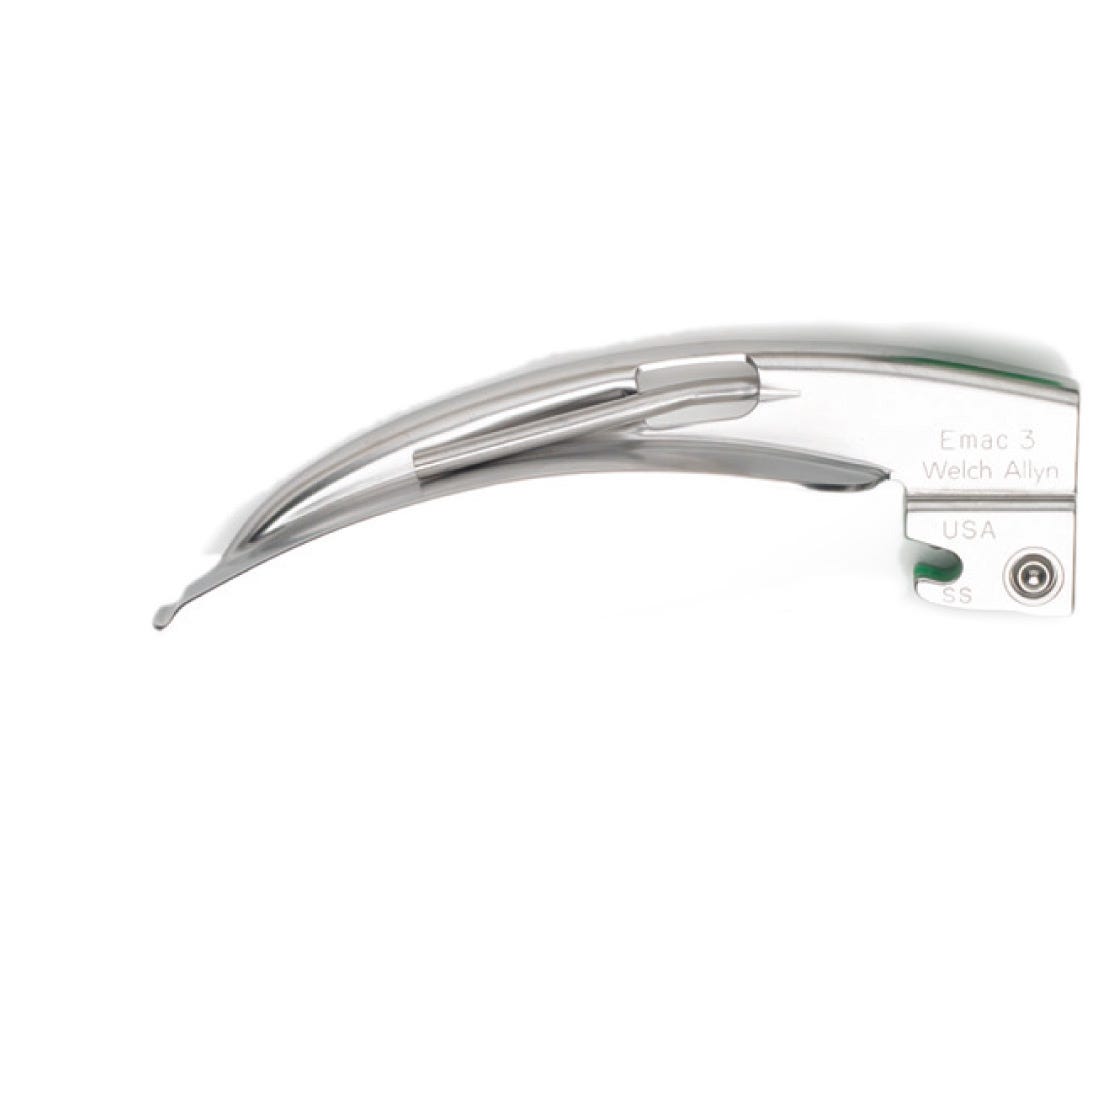 Welch Allyn Standard Fitting FiberOptic Laryngoscope Blades - Macintosh, Size 3, Fits Welch Allyn Fiberoptic Handle